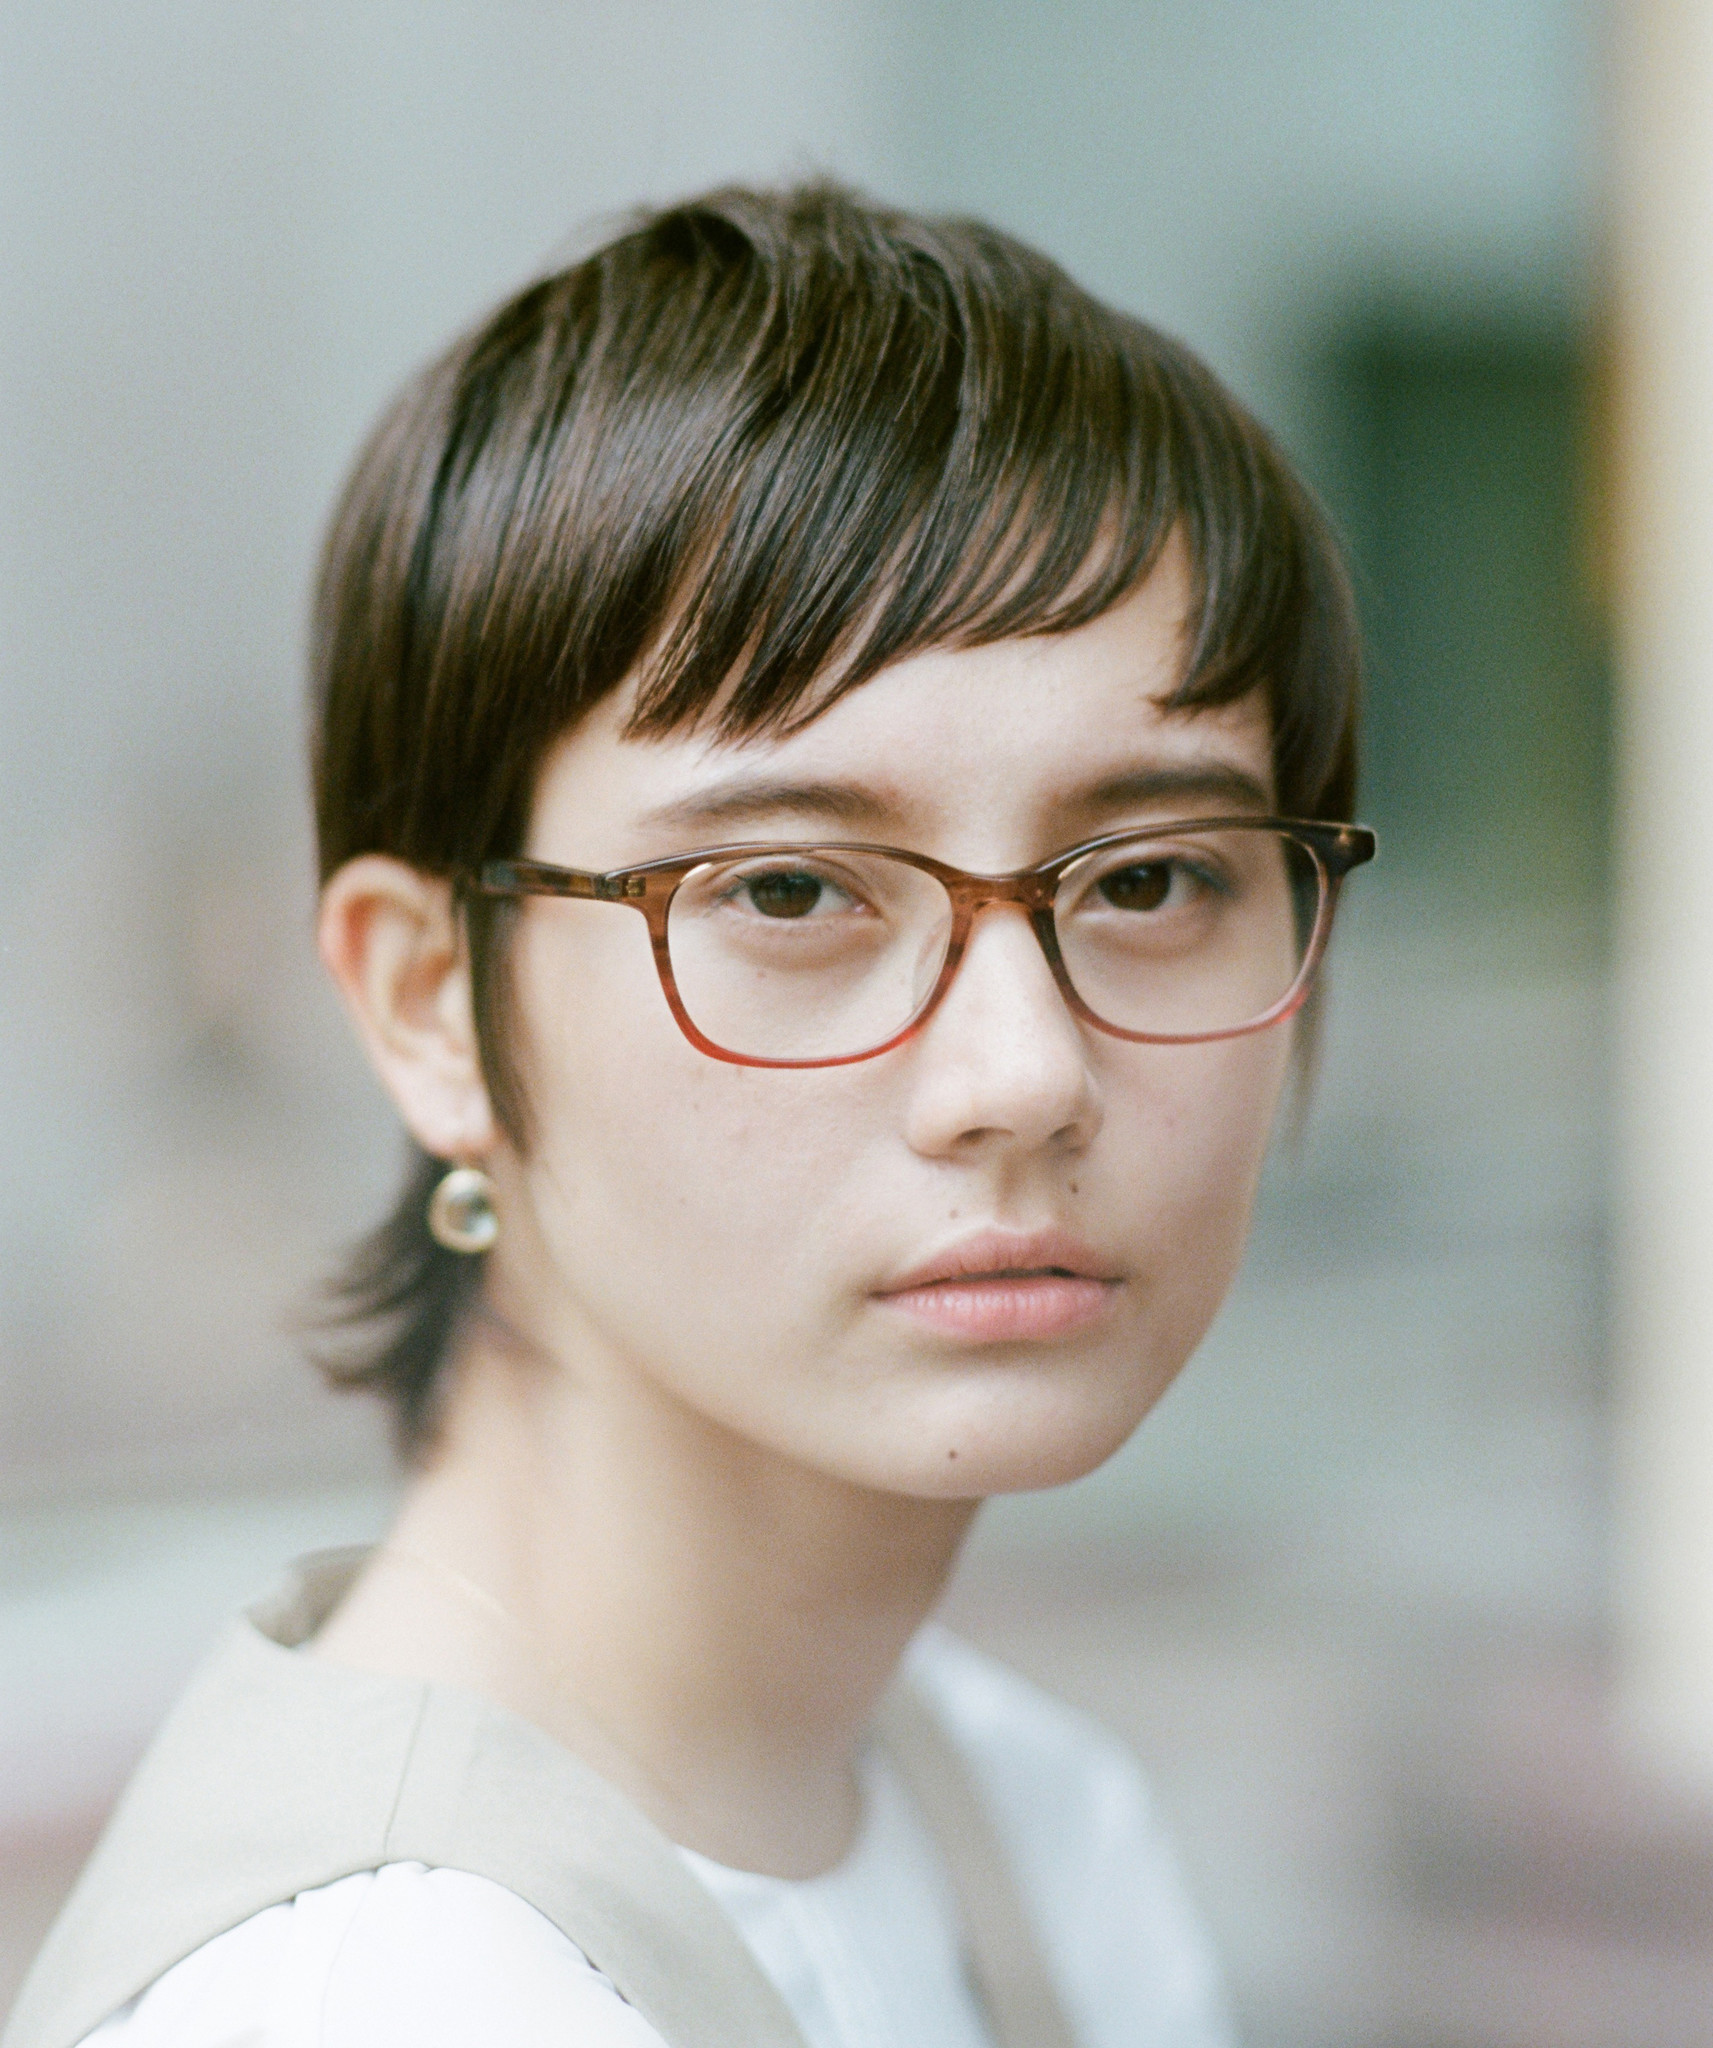 女性に特化したアイウェア専門店 Beauty Optical Salon ルミネ新宿に第一号店オープン 株式会社オンザヒルのプレスリリース